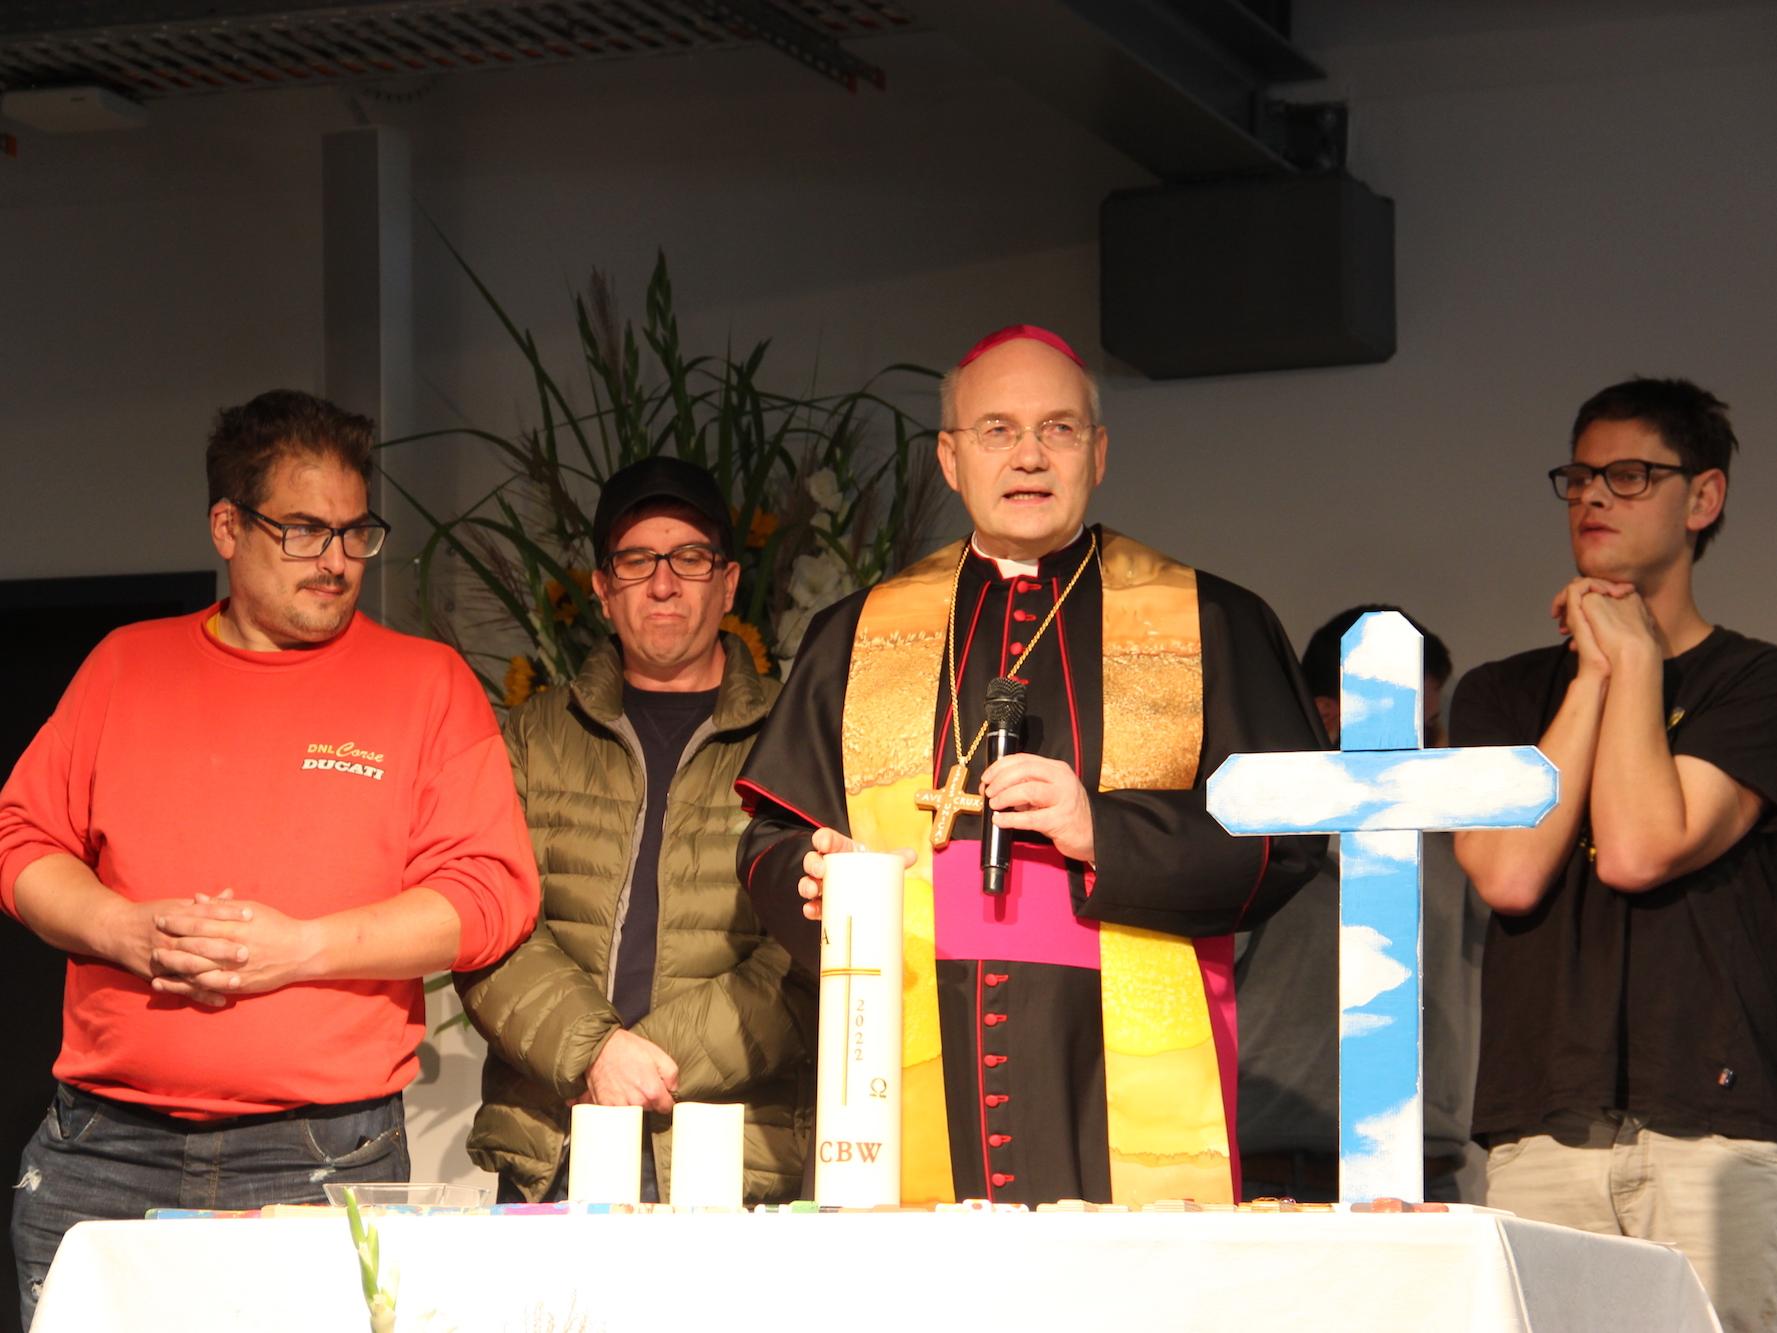 Bischof Helmut Dieser hat sich Verstärkung an den Altar geholt, um gemeinsam mit  einigen der Menschen mit Behinderung eine Kerze für ihre neue Werkstatt zu entzünden.